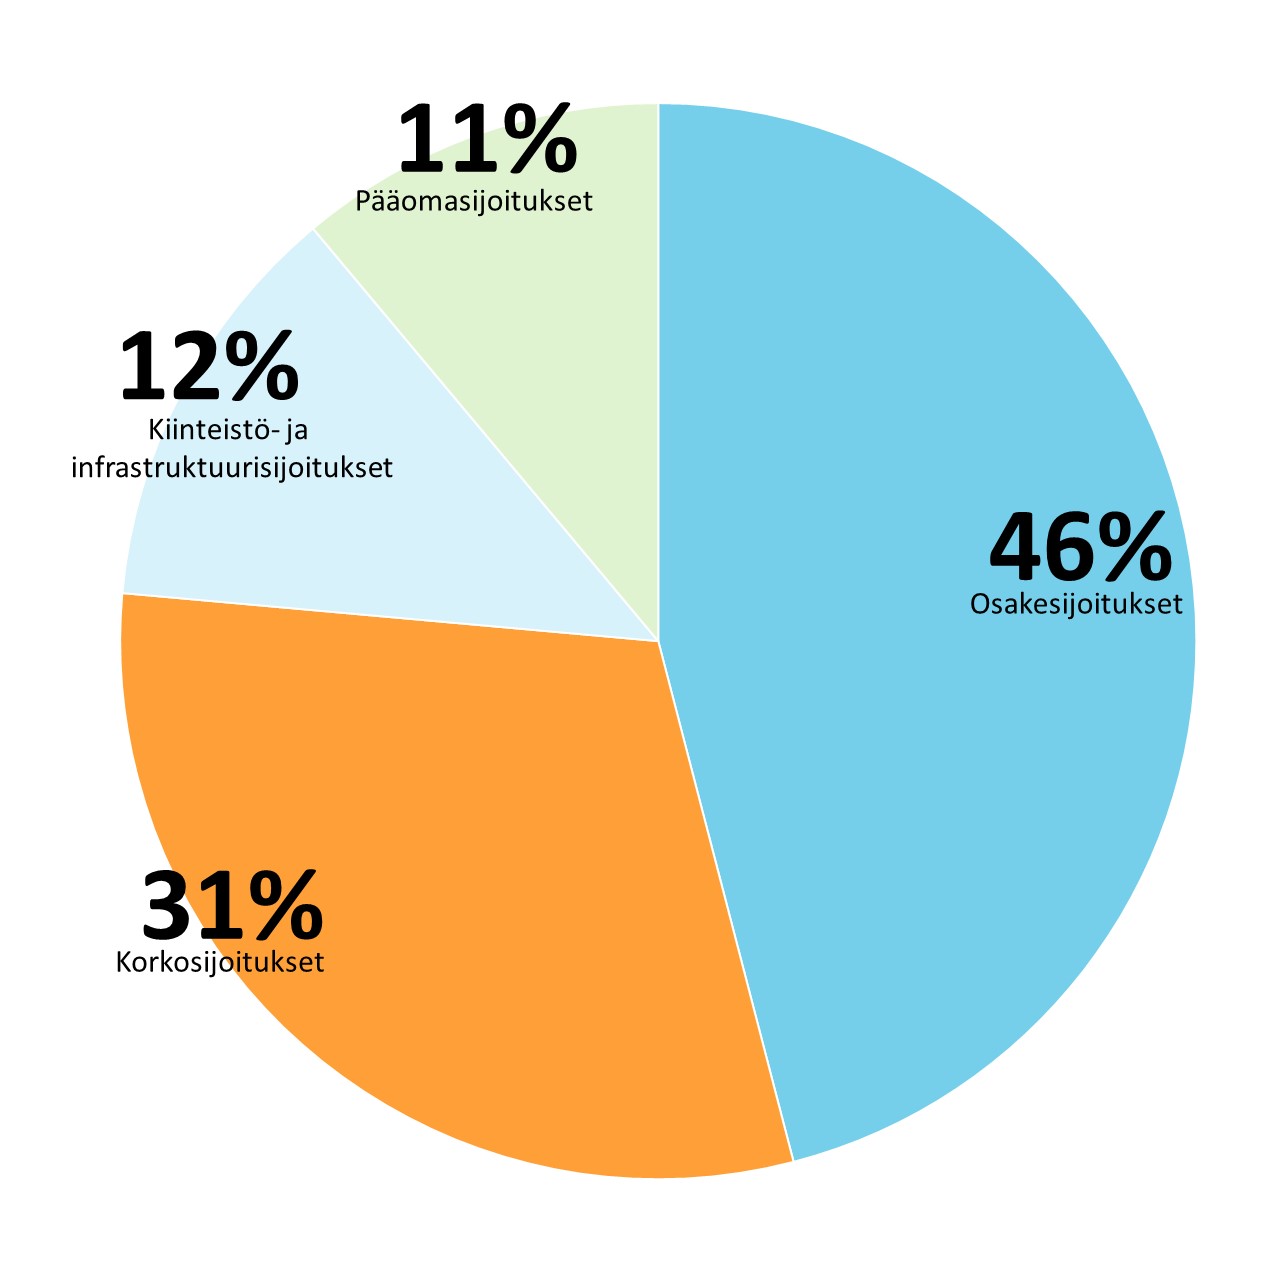 Sitran sijoitukset omaisuuslajeittain vuoden 2020 lopussa: Osakesijoitukset 46%, Korkosijoitukset 31%, Kiinteistö- ja infrastruktuurisijoitukset 12%, Pääomasijoitukset 11%